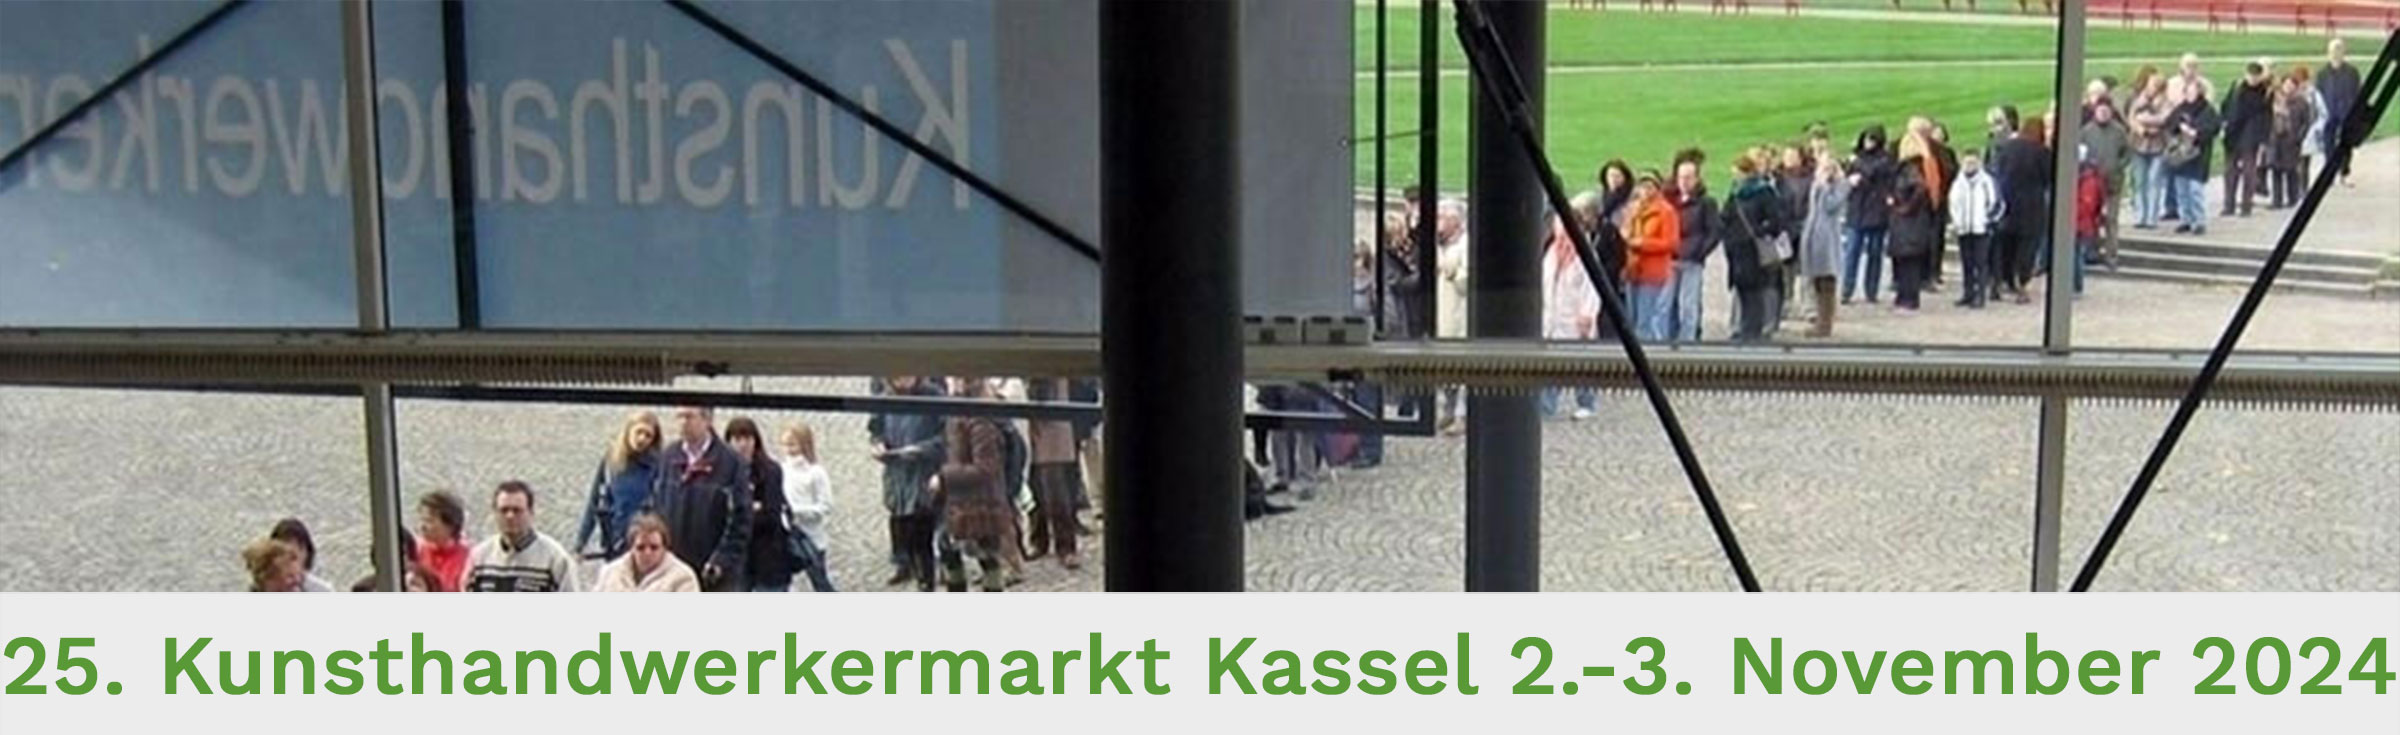 Kunsthandwerkermarkt Kassel